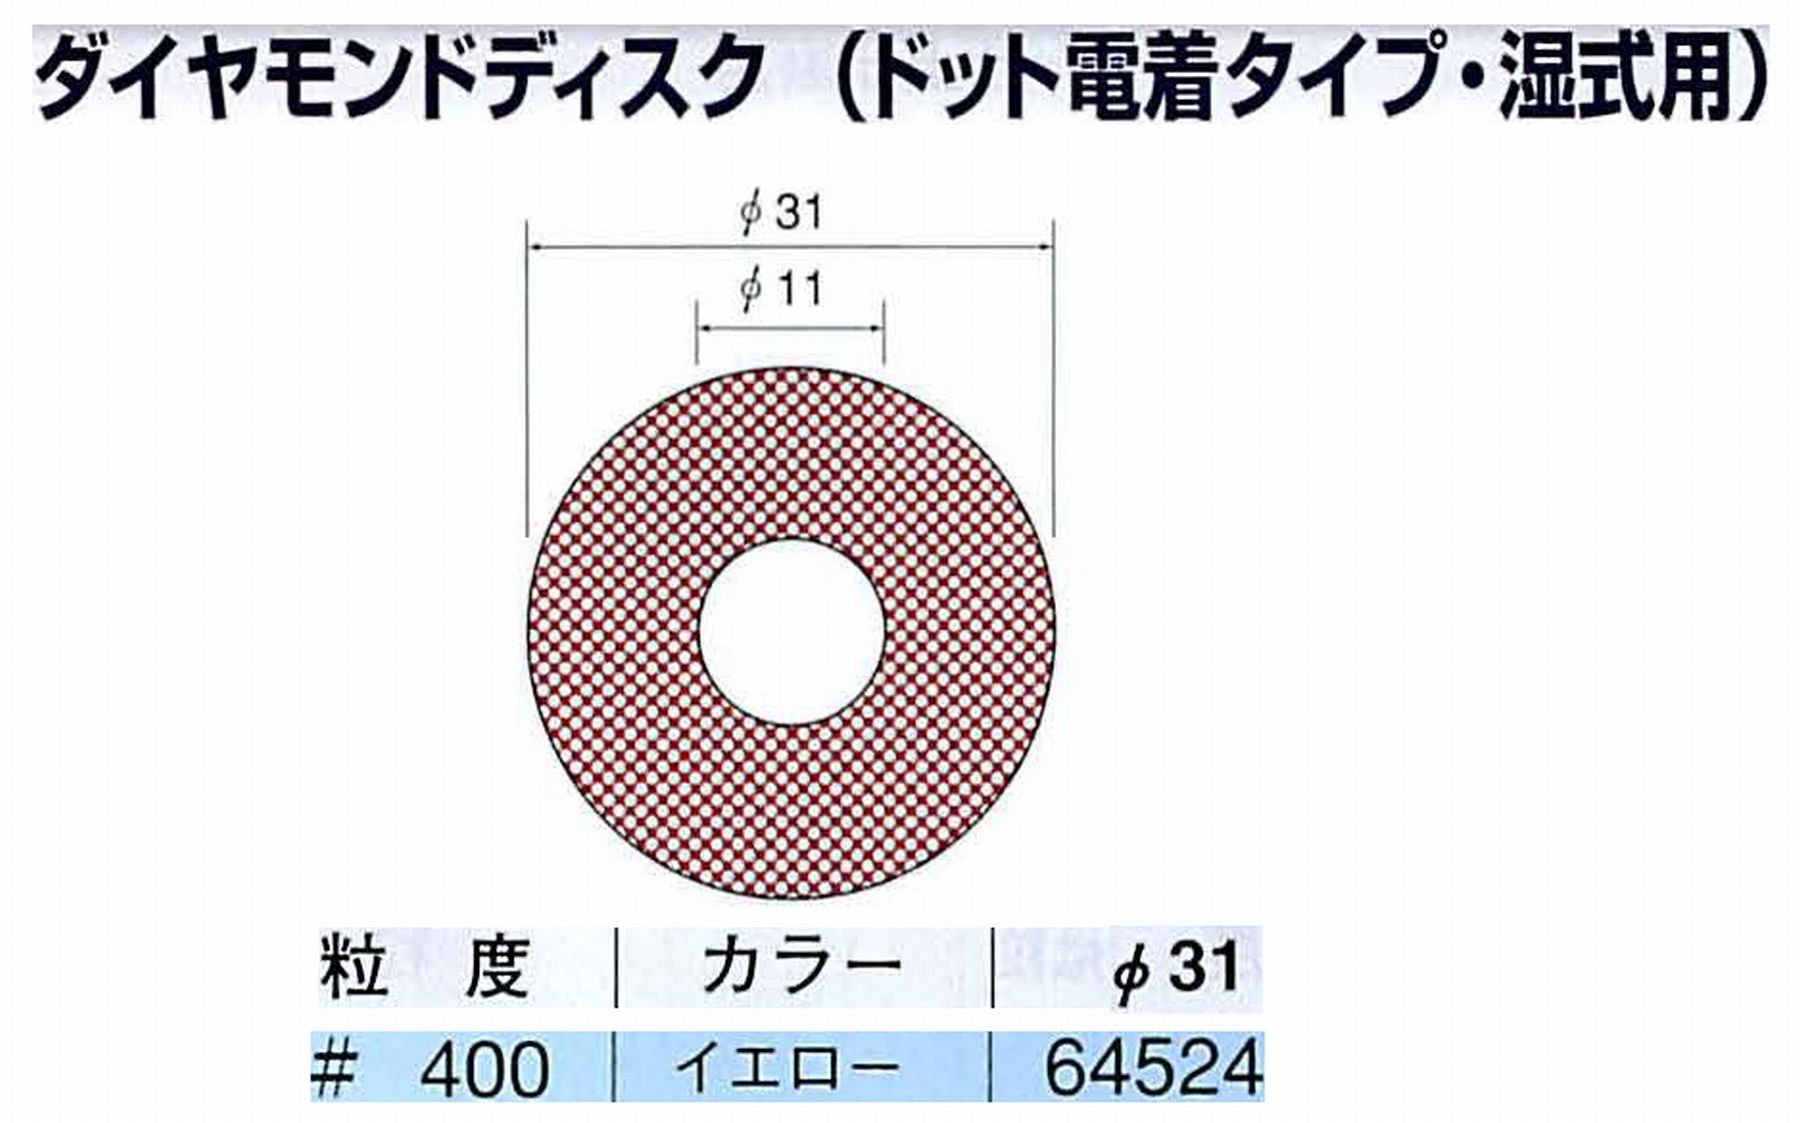 ナカニシ/NAKANISHI アングルグラインダ(電動・エアー) アングルアタッチメント専用工具 ダイヤモンドディスク(ドット電着タイプ・湿式用) 64524